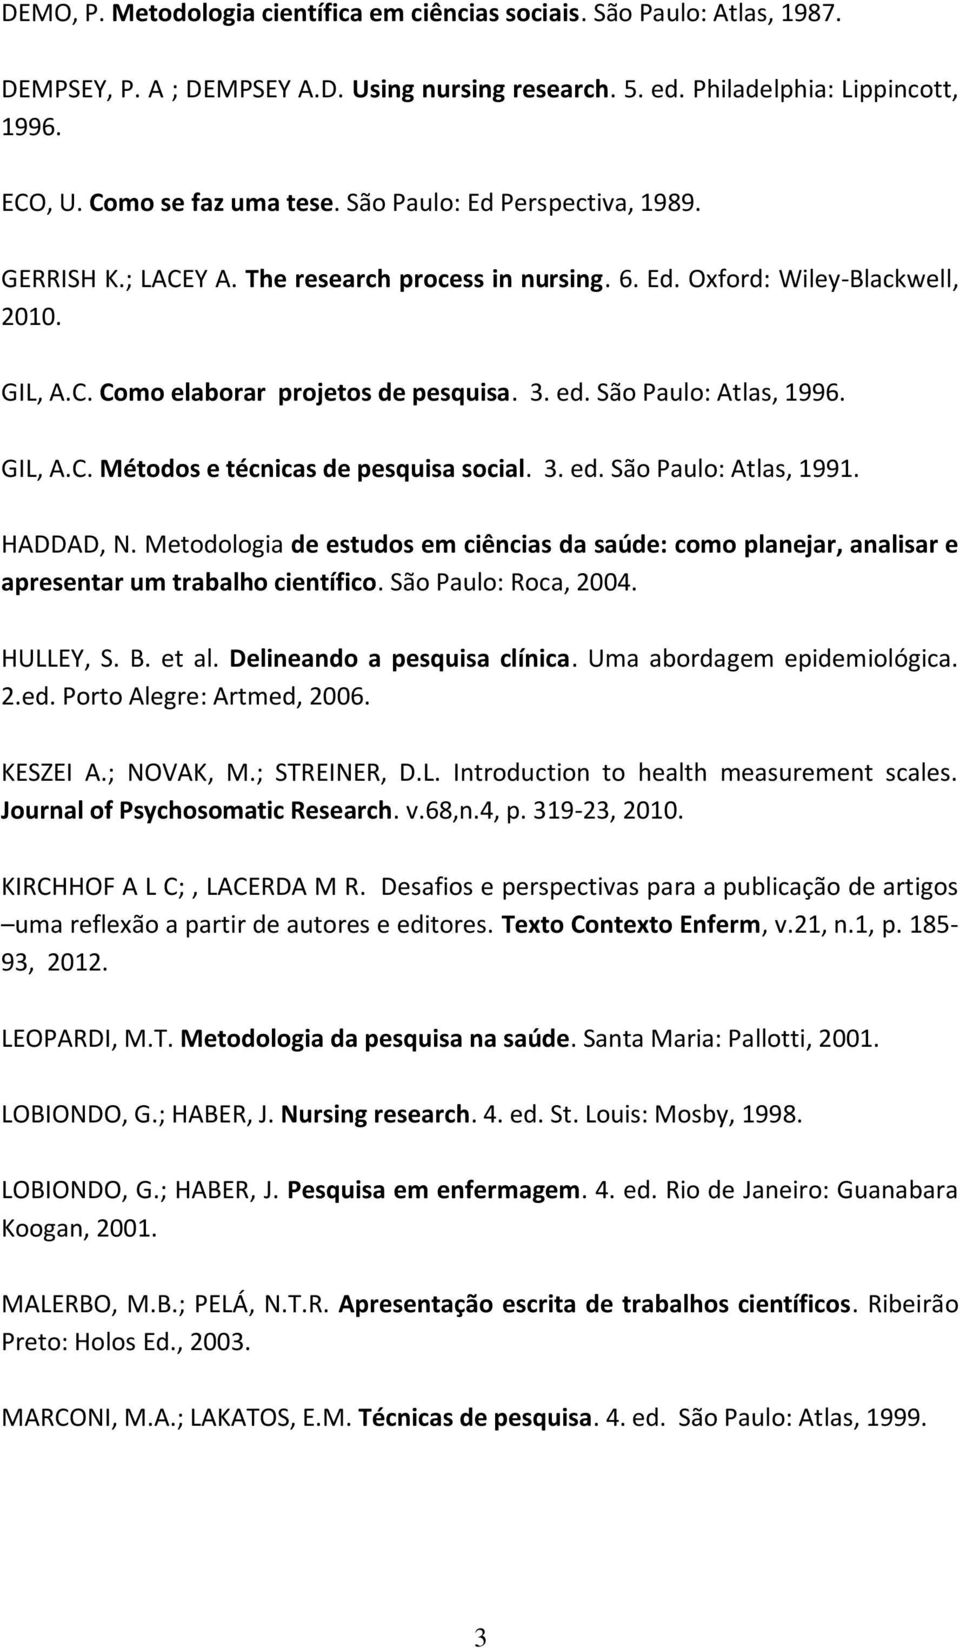 São Paulo: Atlas, 1996. GIL, A.C. Métodos e técnicas de pesquisa social. 3. ed. São Paulo: Atlas, 1991. HADDAD, N.